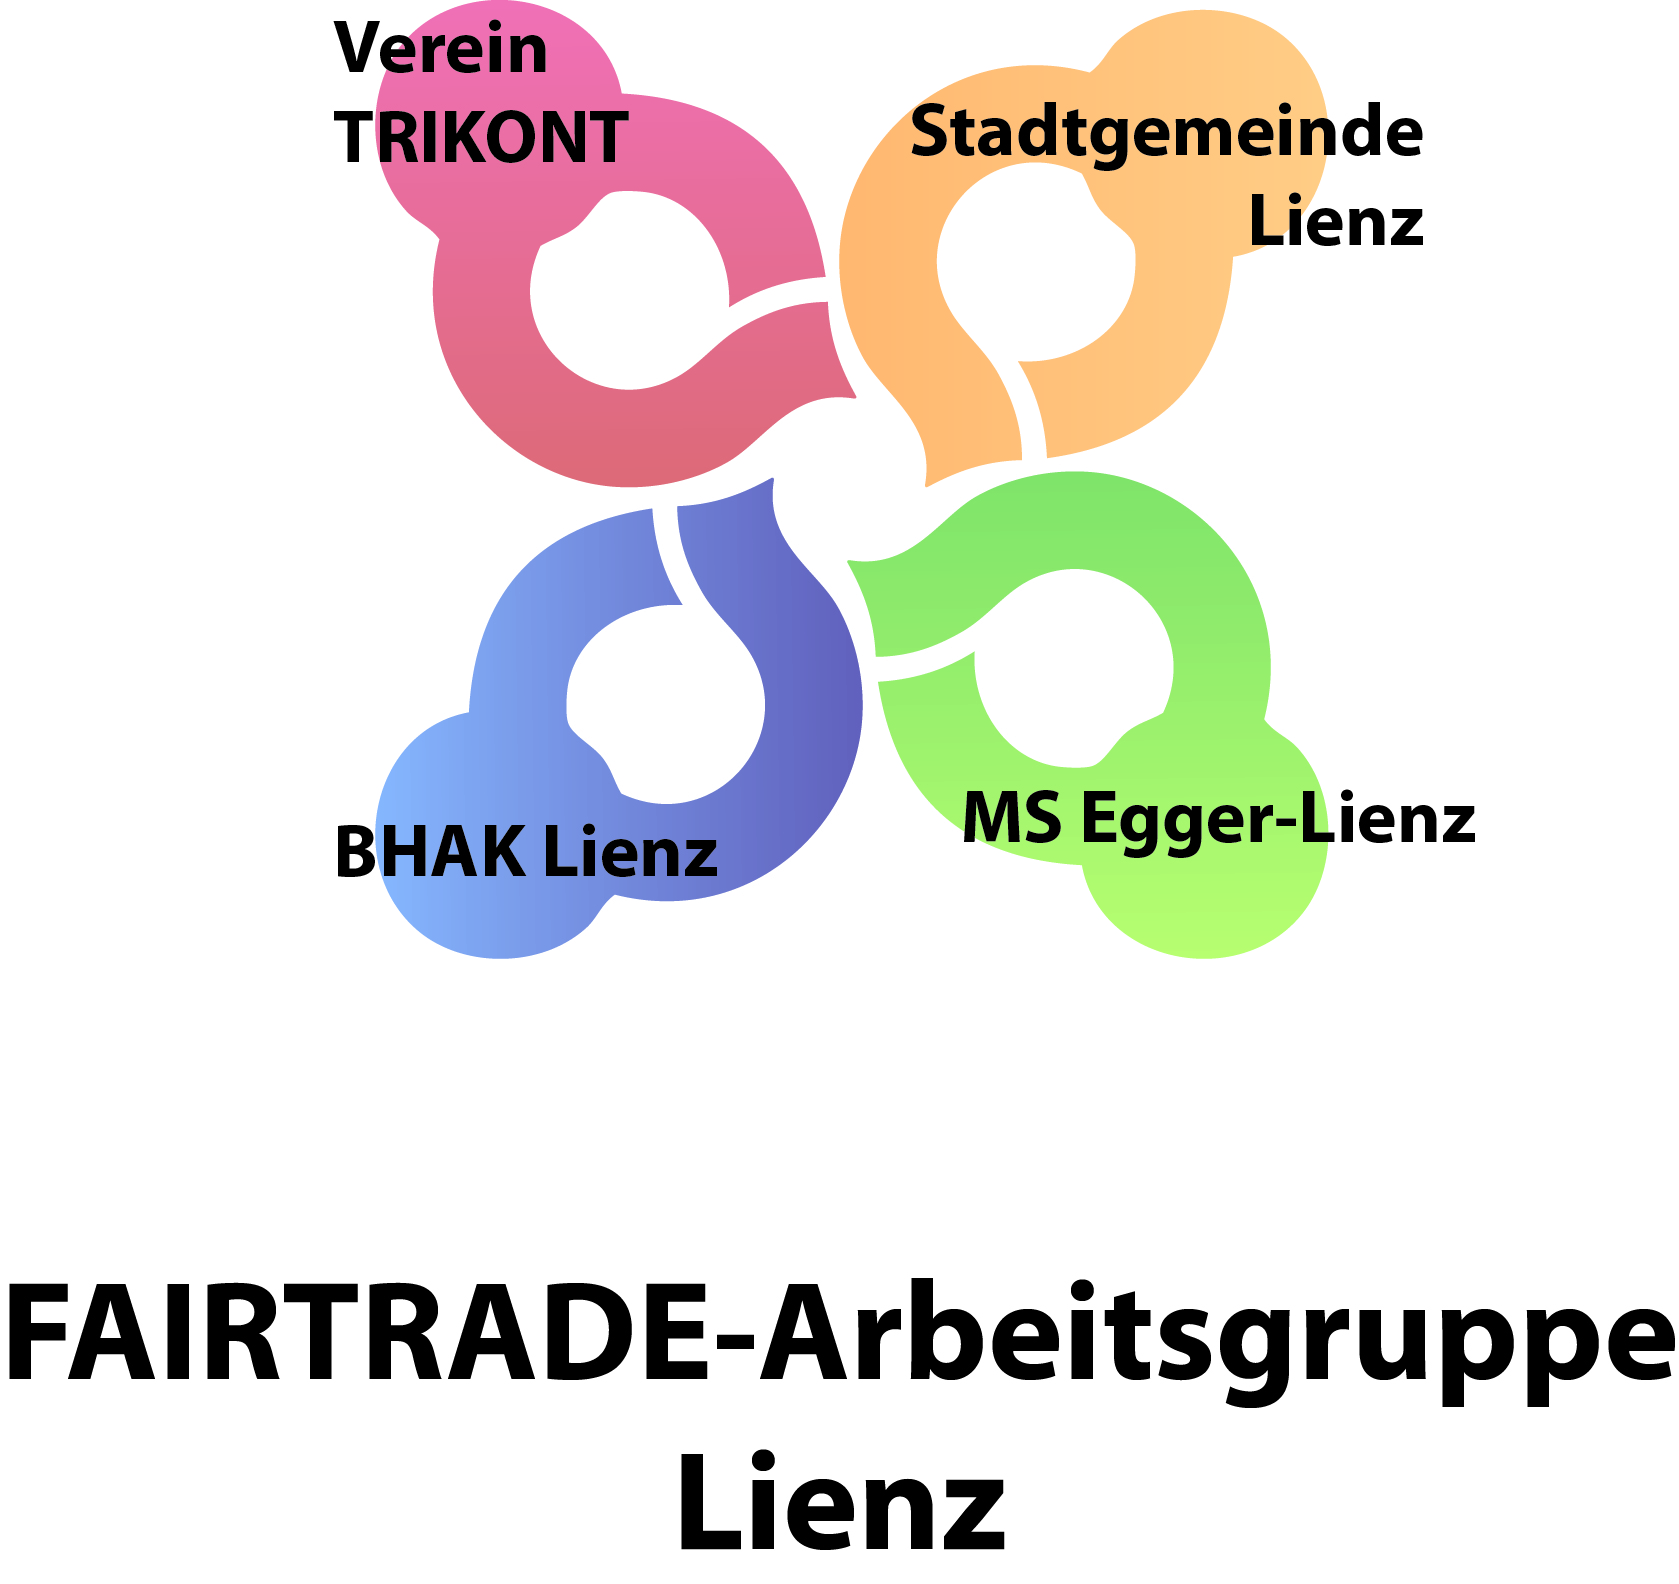 FAIRTRADE-Arbeitsgruppe Lienz Logo